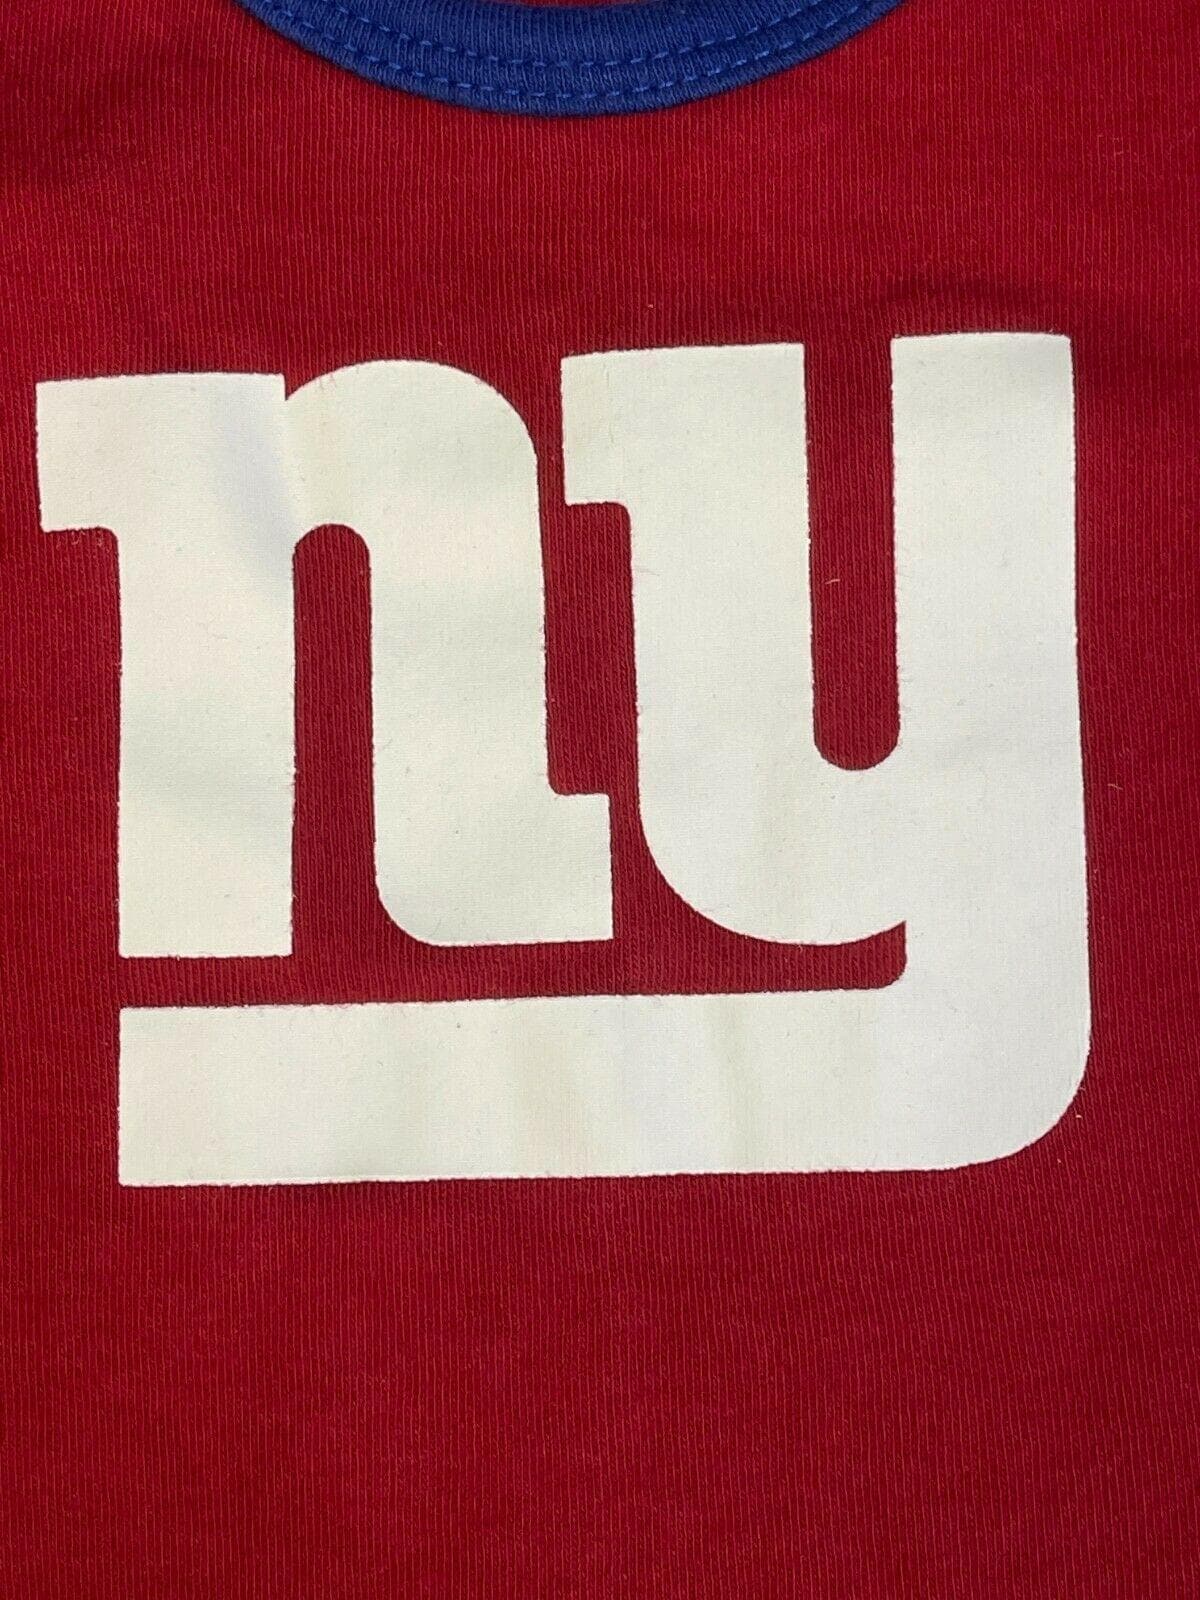 NFL New York Giants Bodysuit/Vest Girls' Red 6-9 months